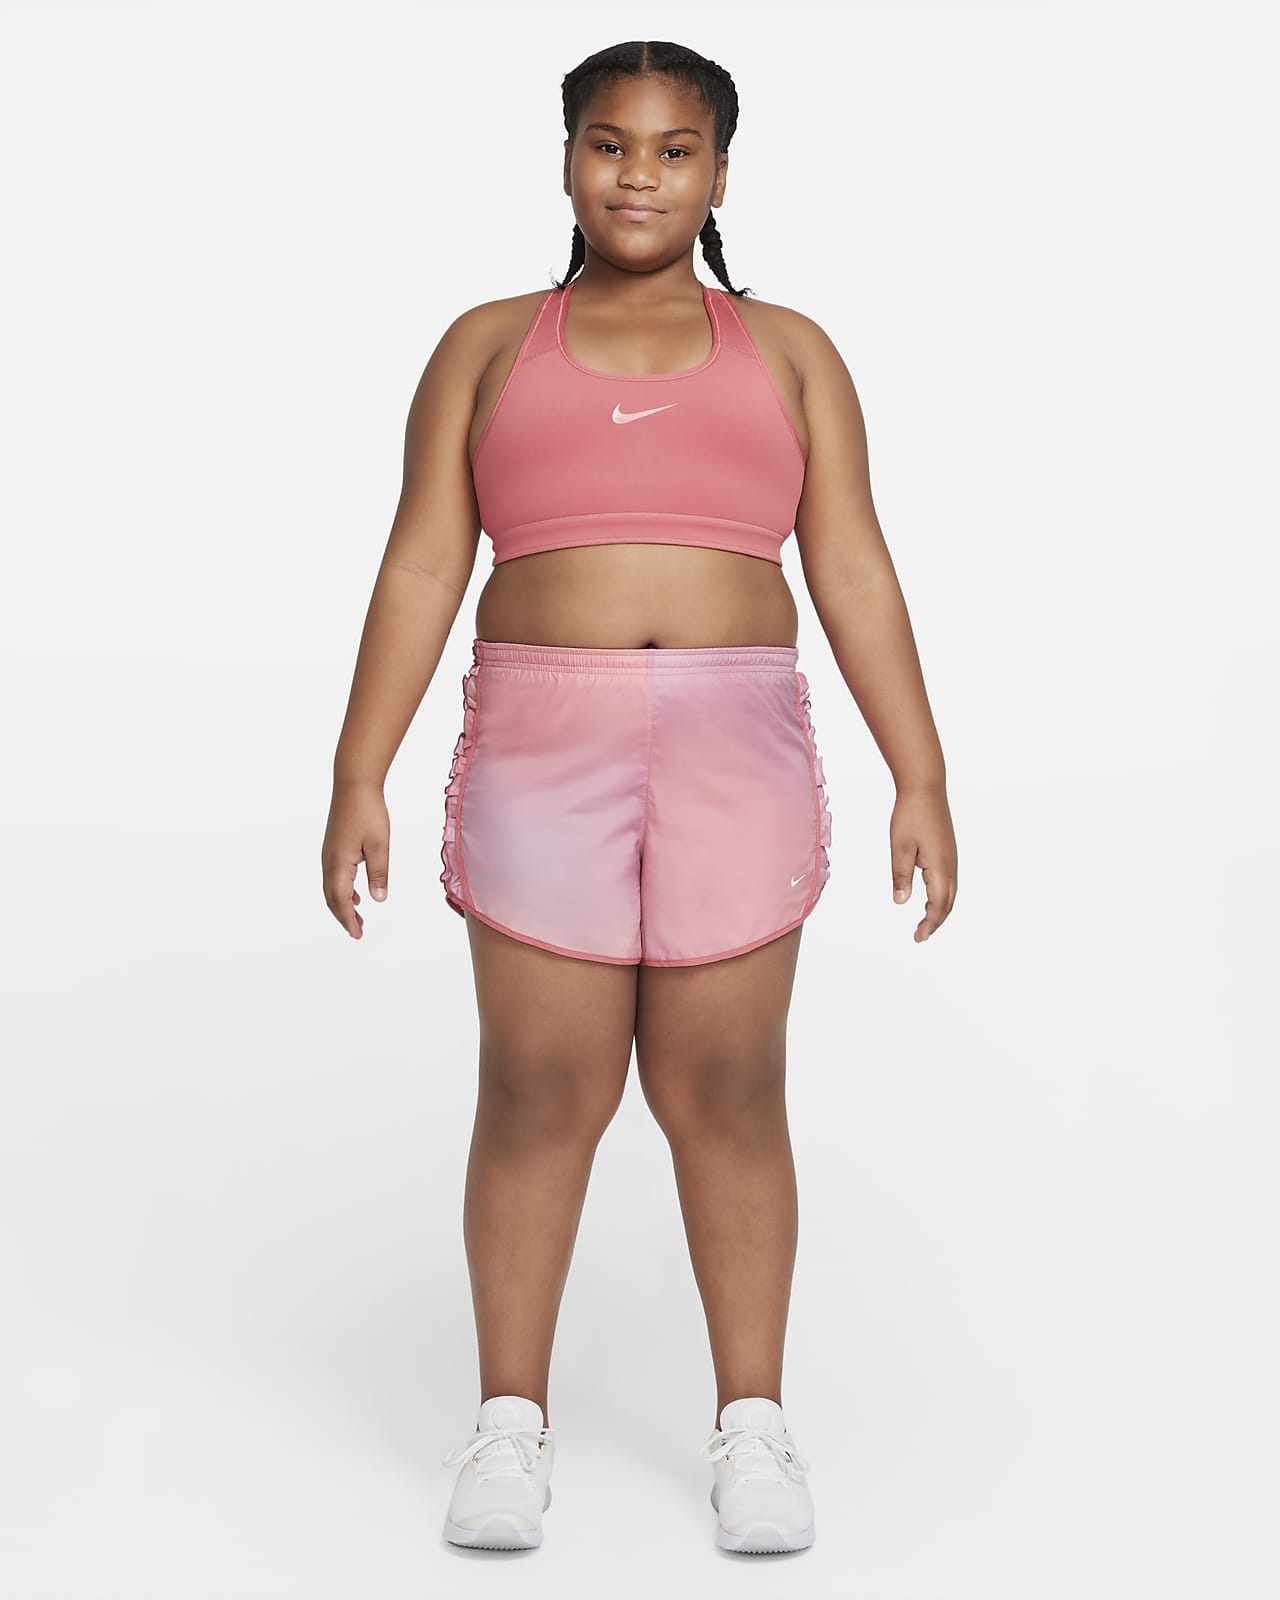 Nike Big Girls Dri-Fit Tempo Running Shorts, Plus Sizes 